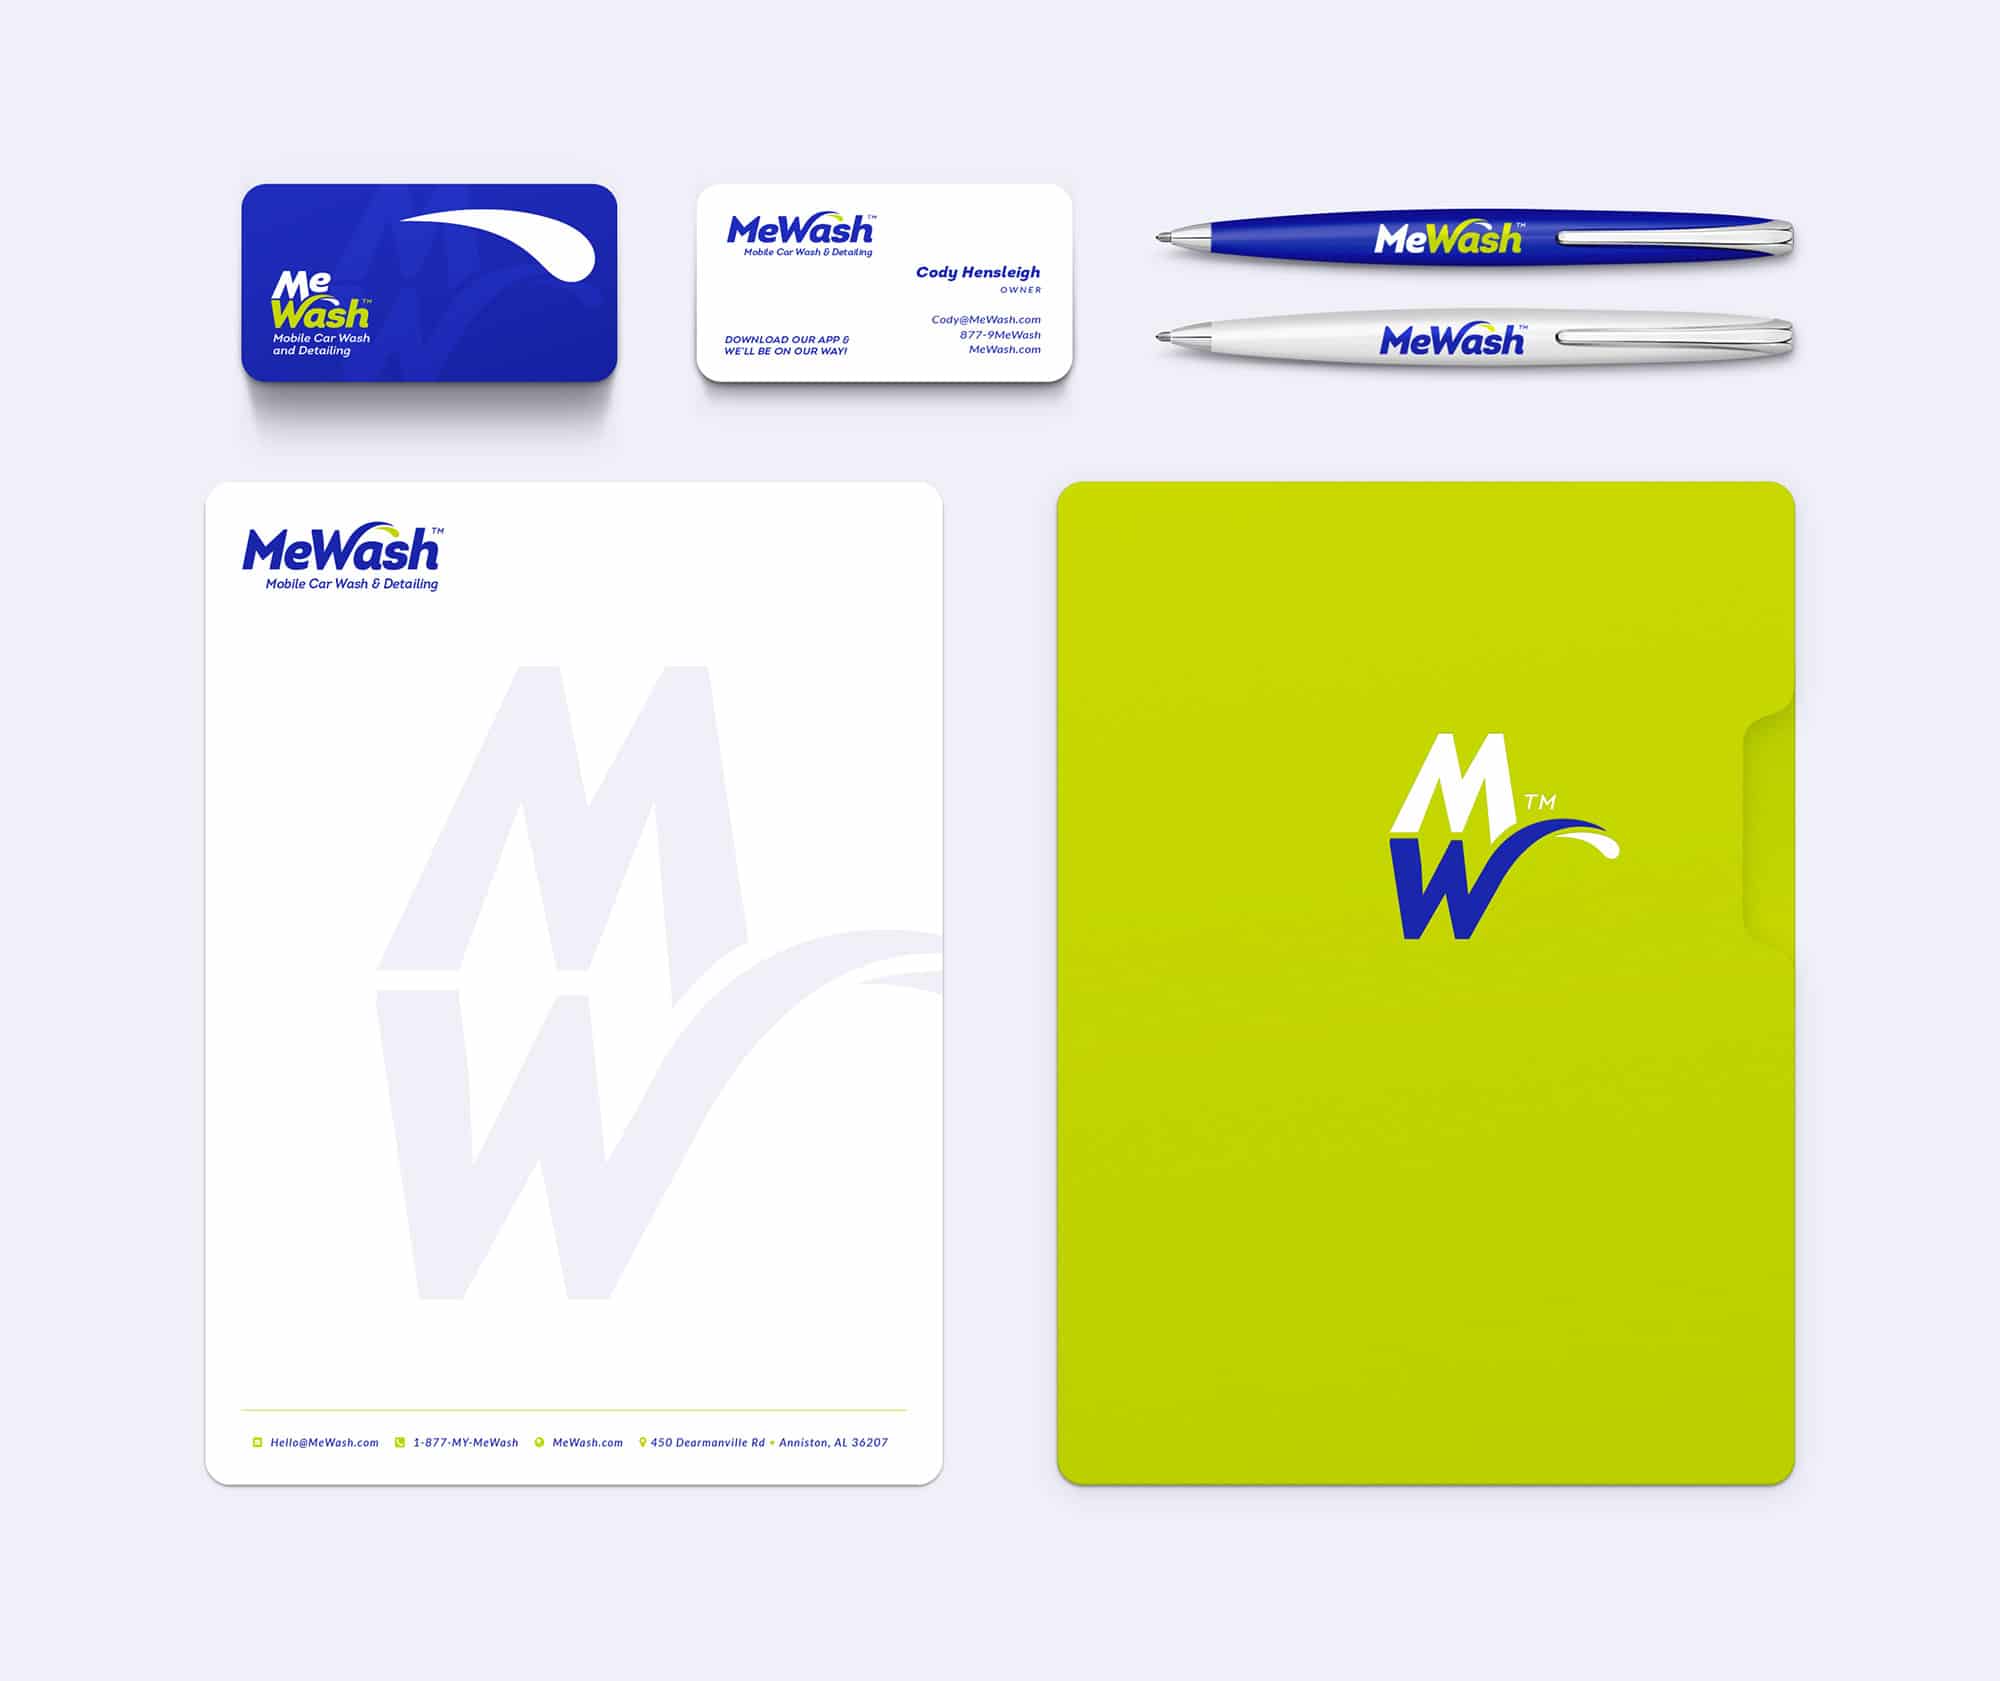 MeWash Identity Design